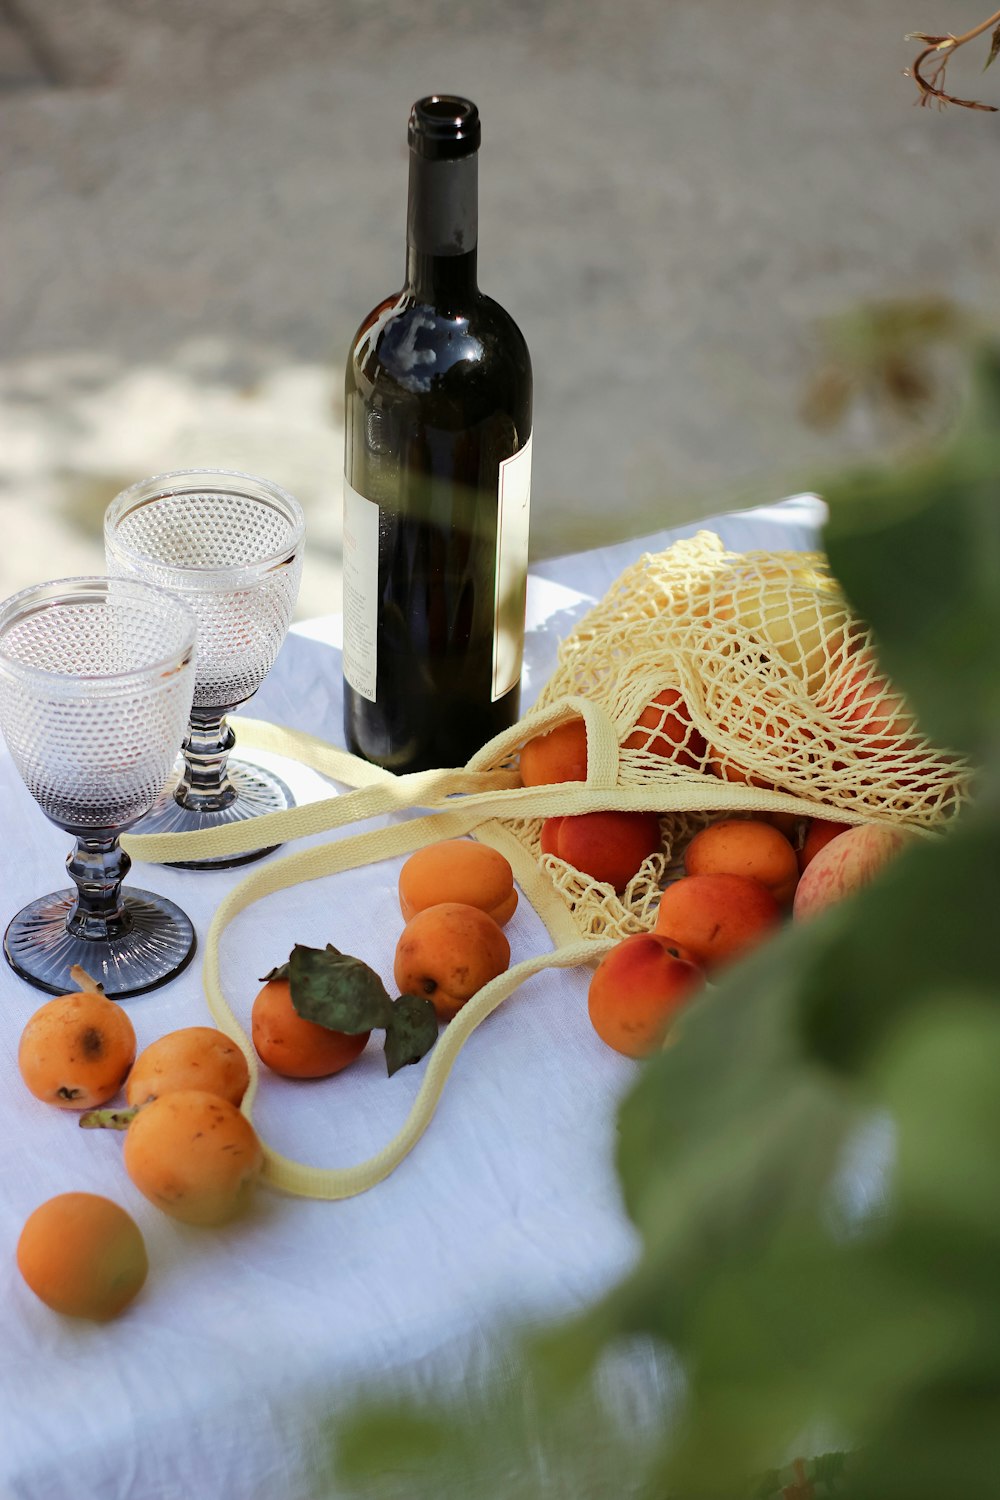 wine bottle beside fruits on table